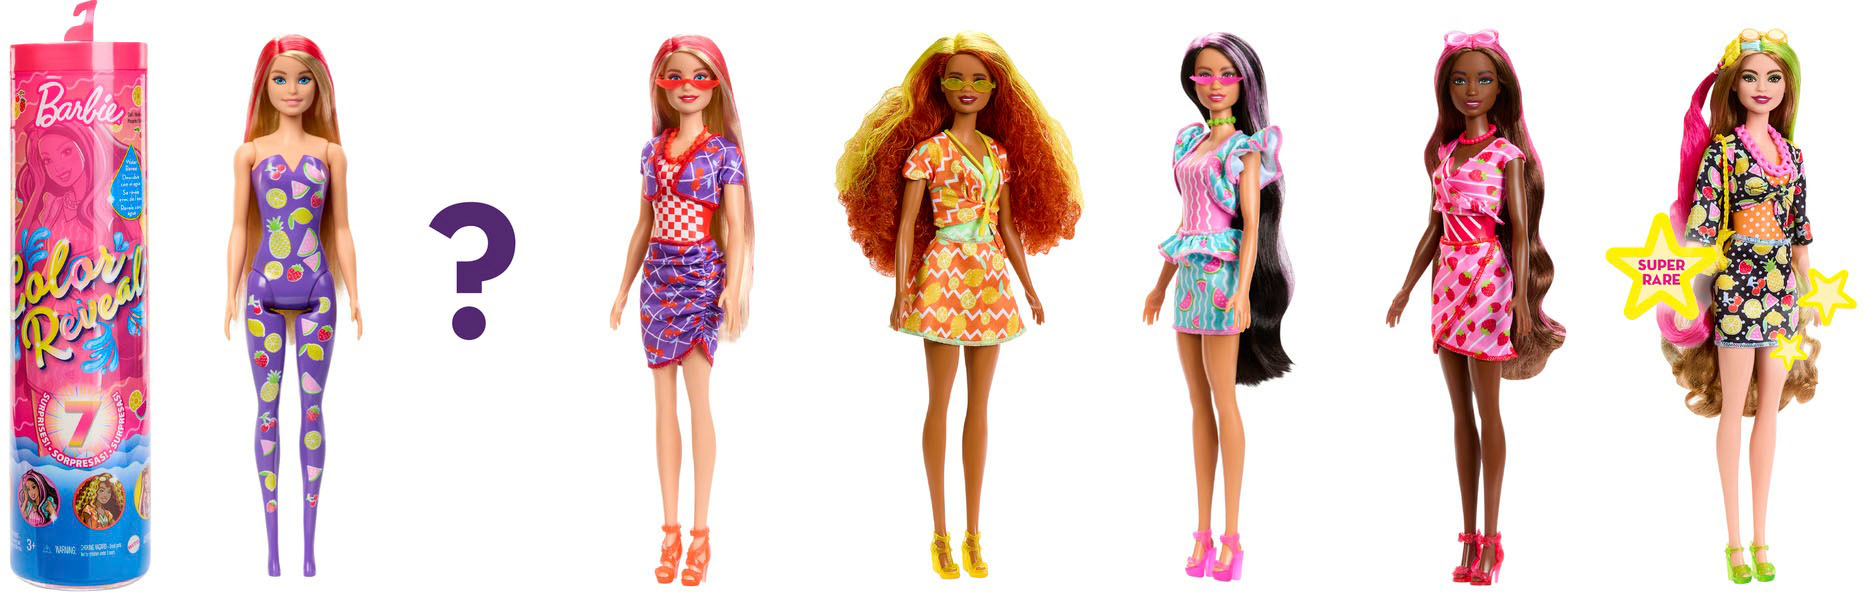 Best Buy: Barbie Color Reveal Scented Sweet Fruit Series 11.5